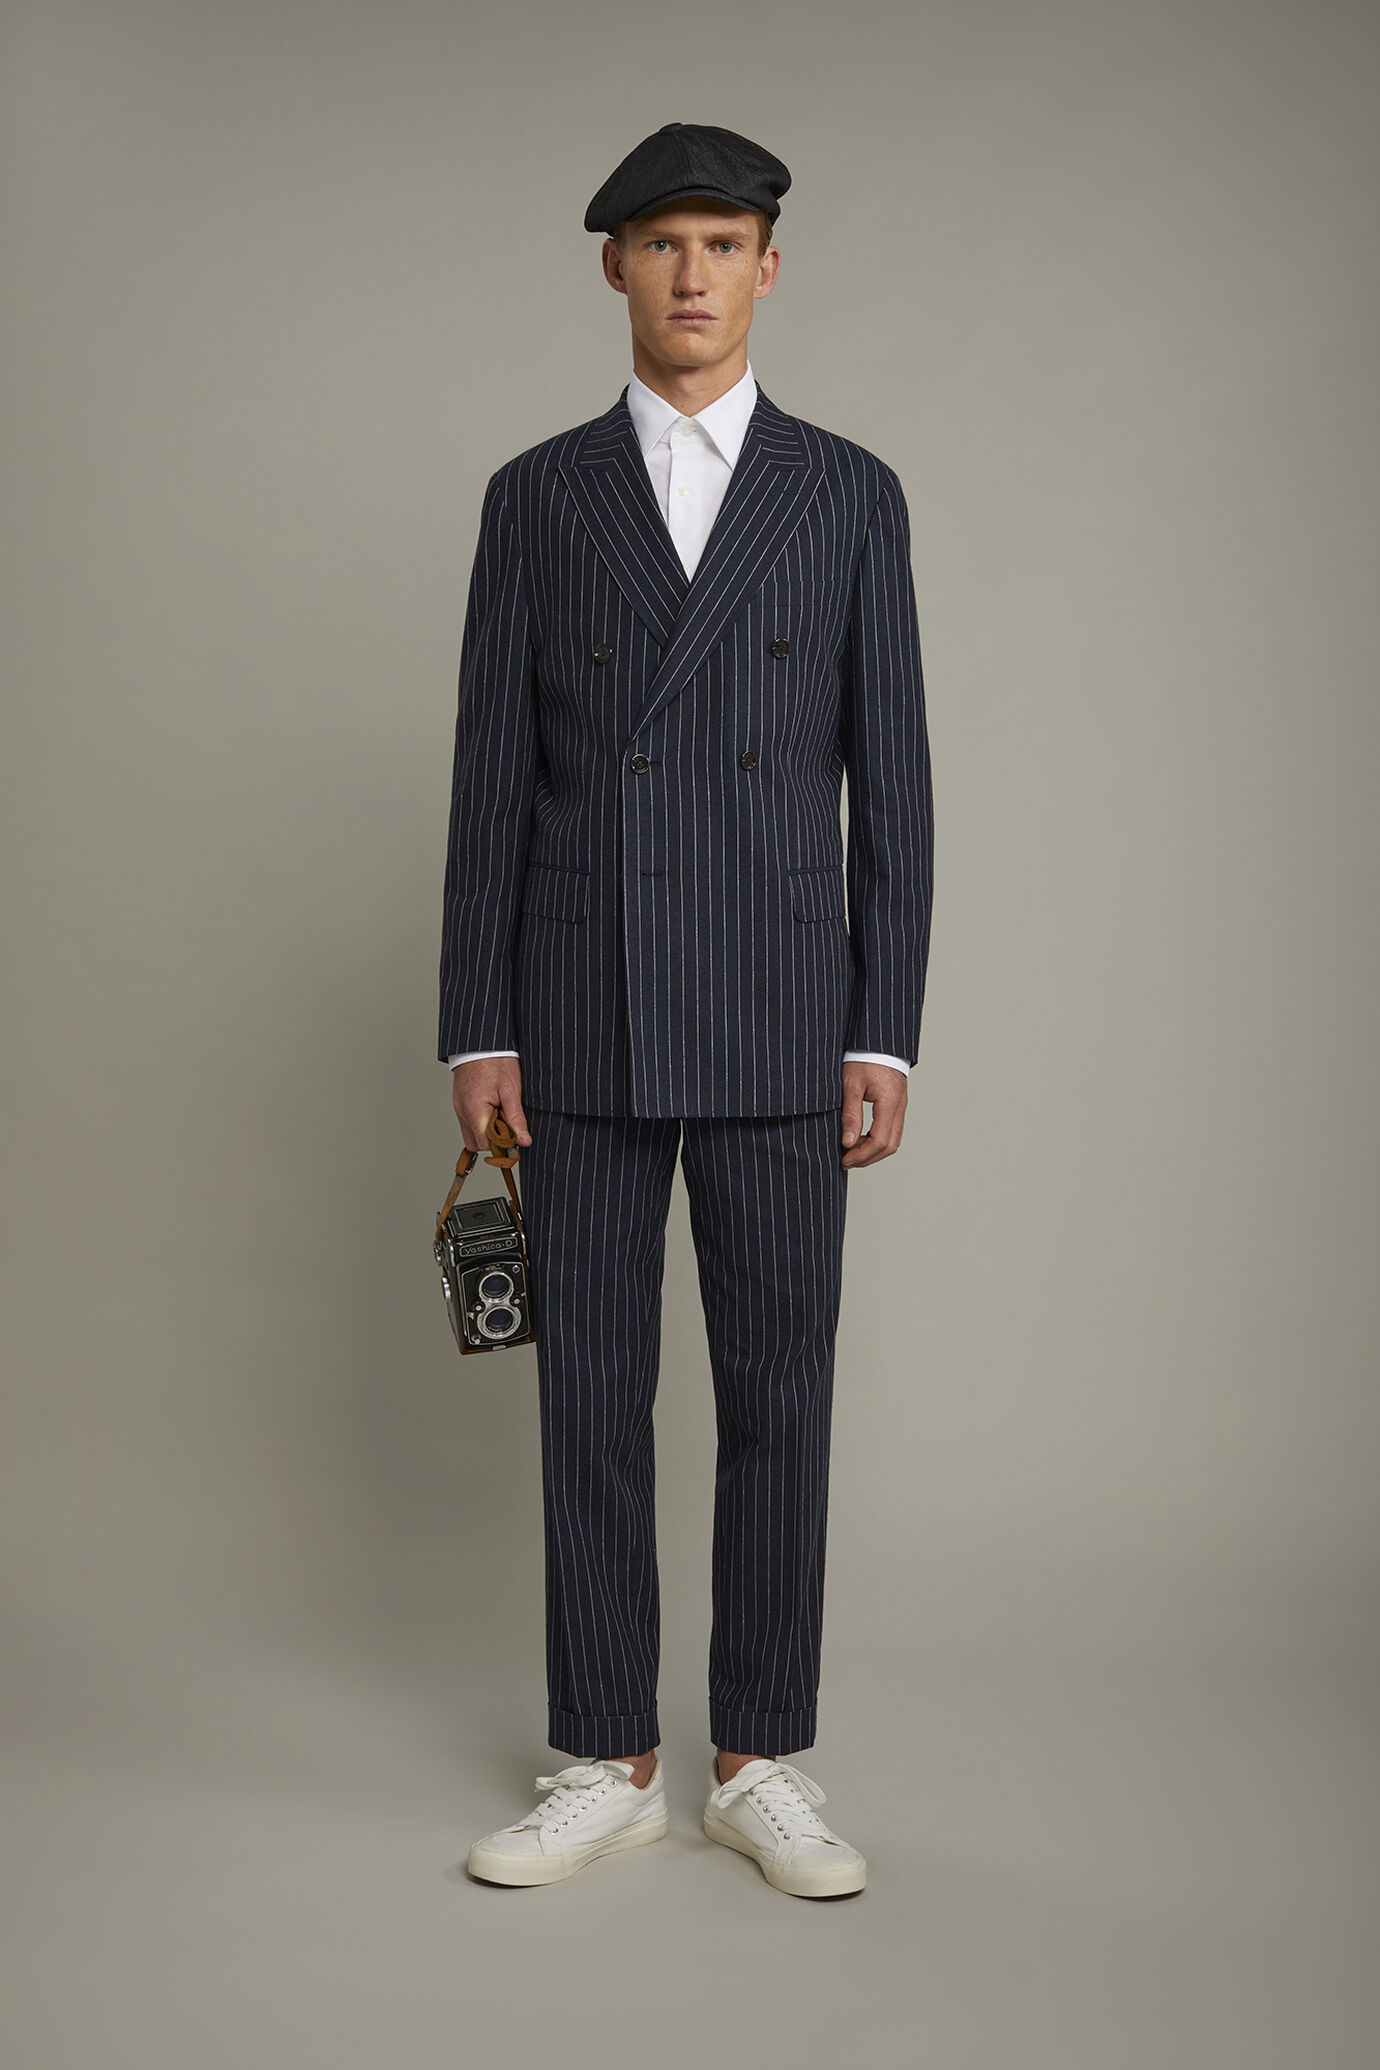 Pantalone classico uomo con doppia pince tessuto lino e cotone con disegno gessato regular fit image number 0